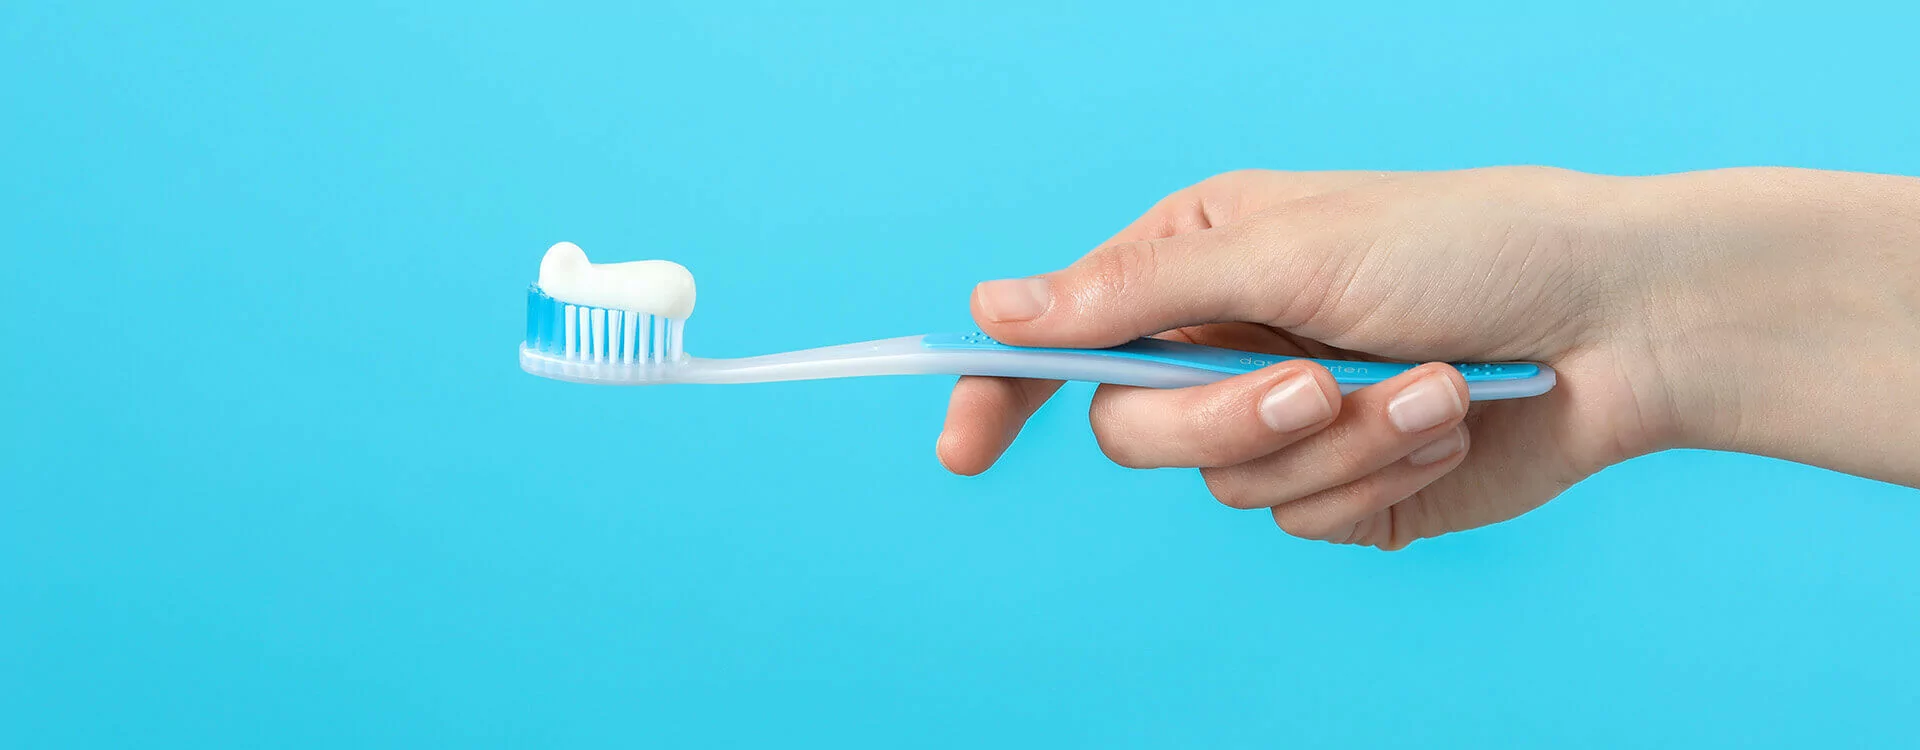 Comment choisir le meilleur dentifrice et la meilleure brosse à dents ?